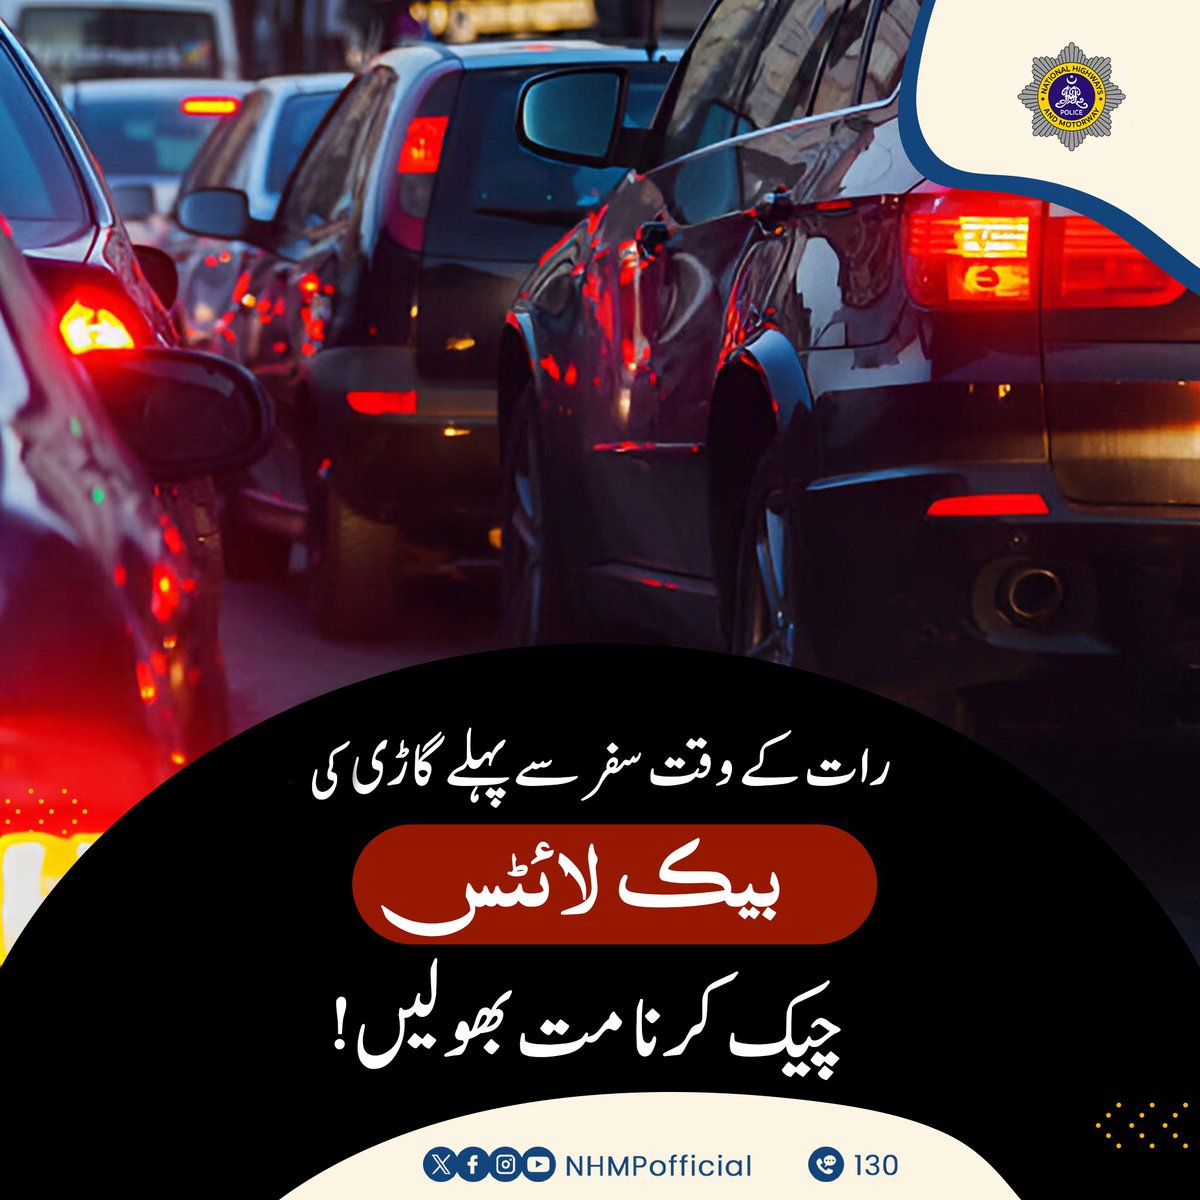 ٹریفک قوانین پر عمل کریں اور اپنا سفر محفوظ بنائیں!